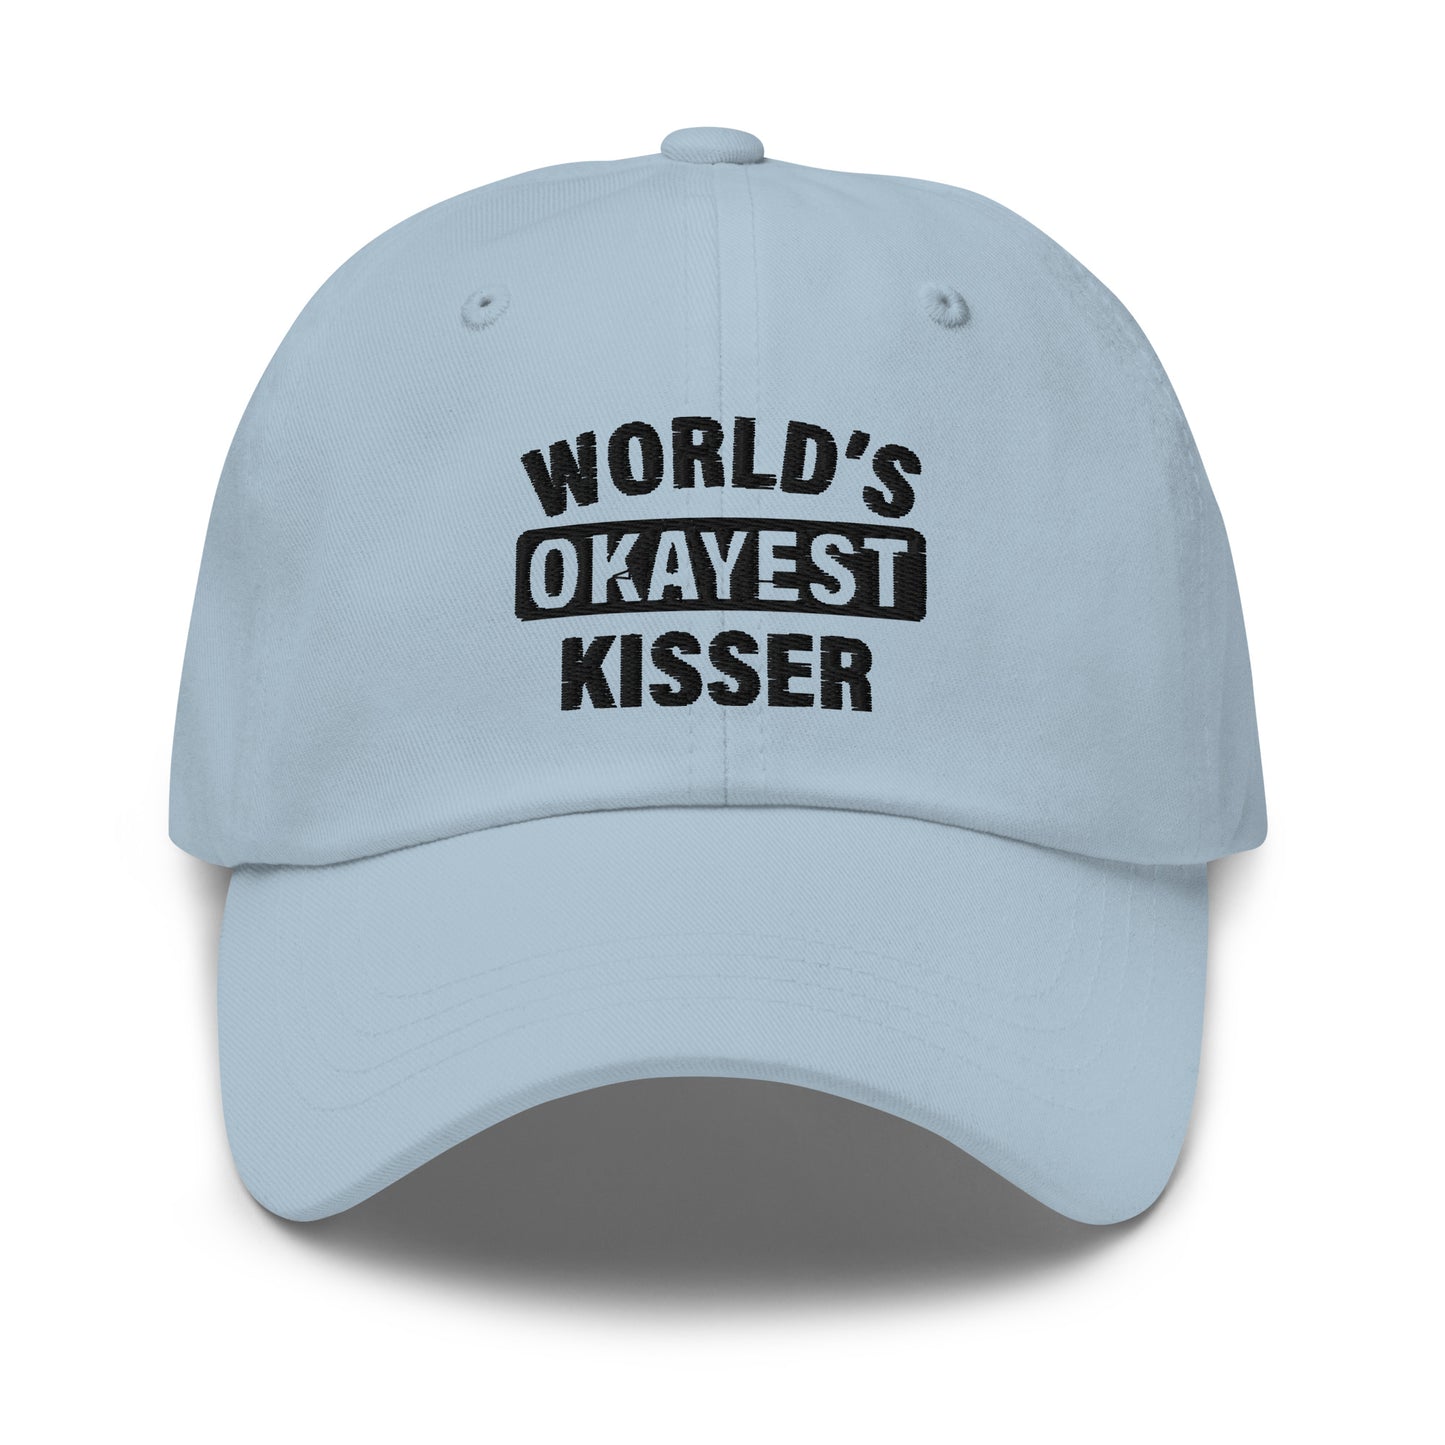 World's Okayest Kisser hat